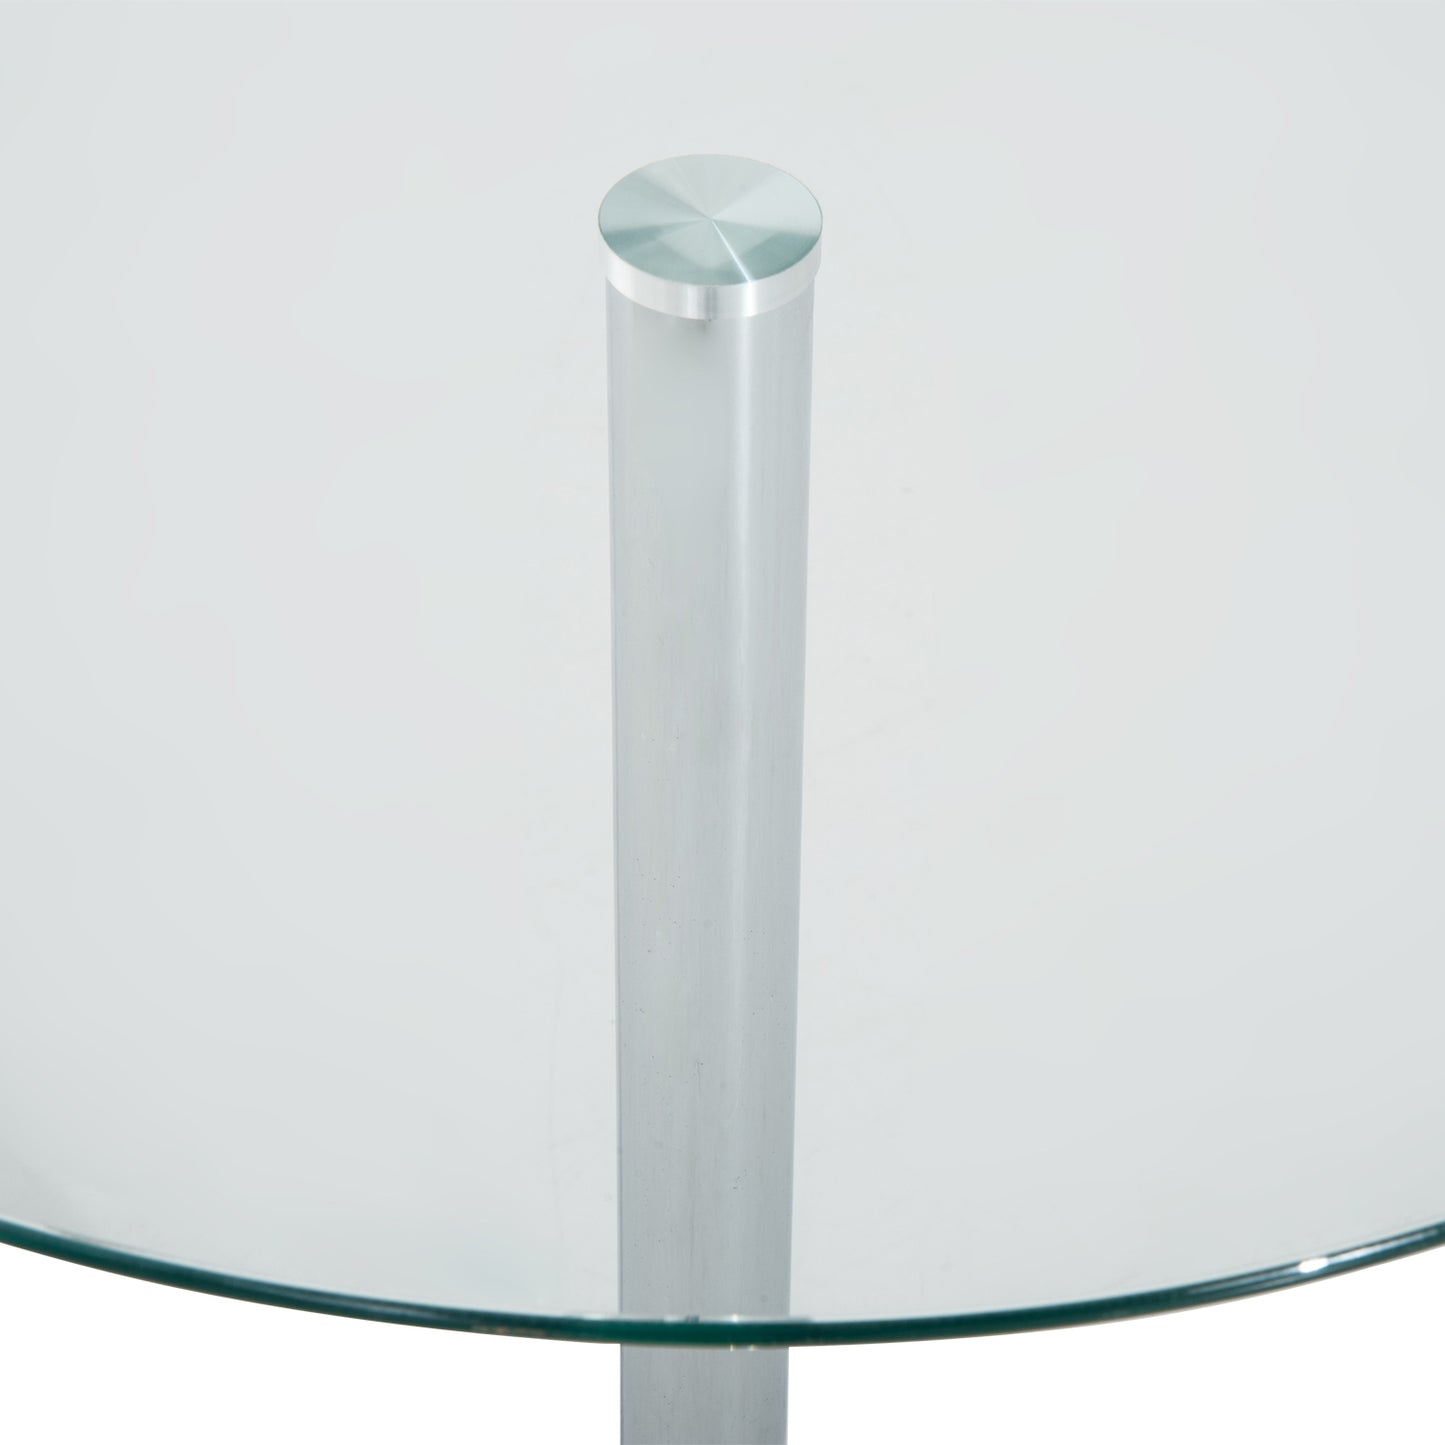 HOMCOM Round Bar Table W/ Glass Top-Transparent Glass, Silver